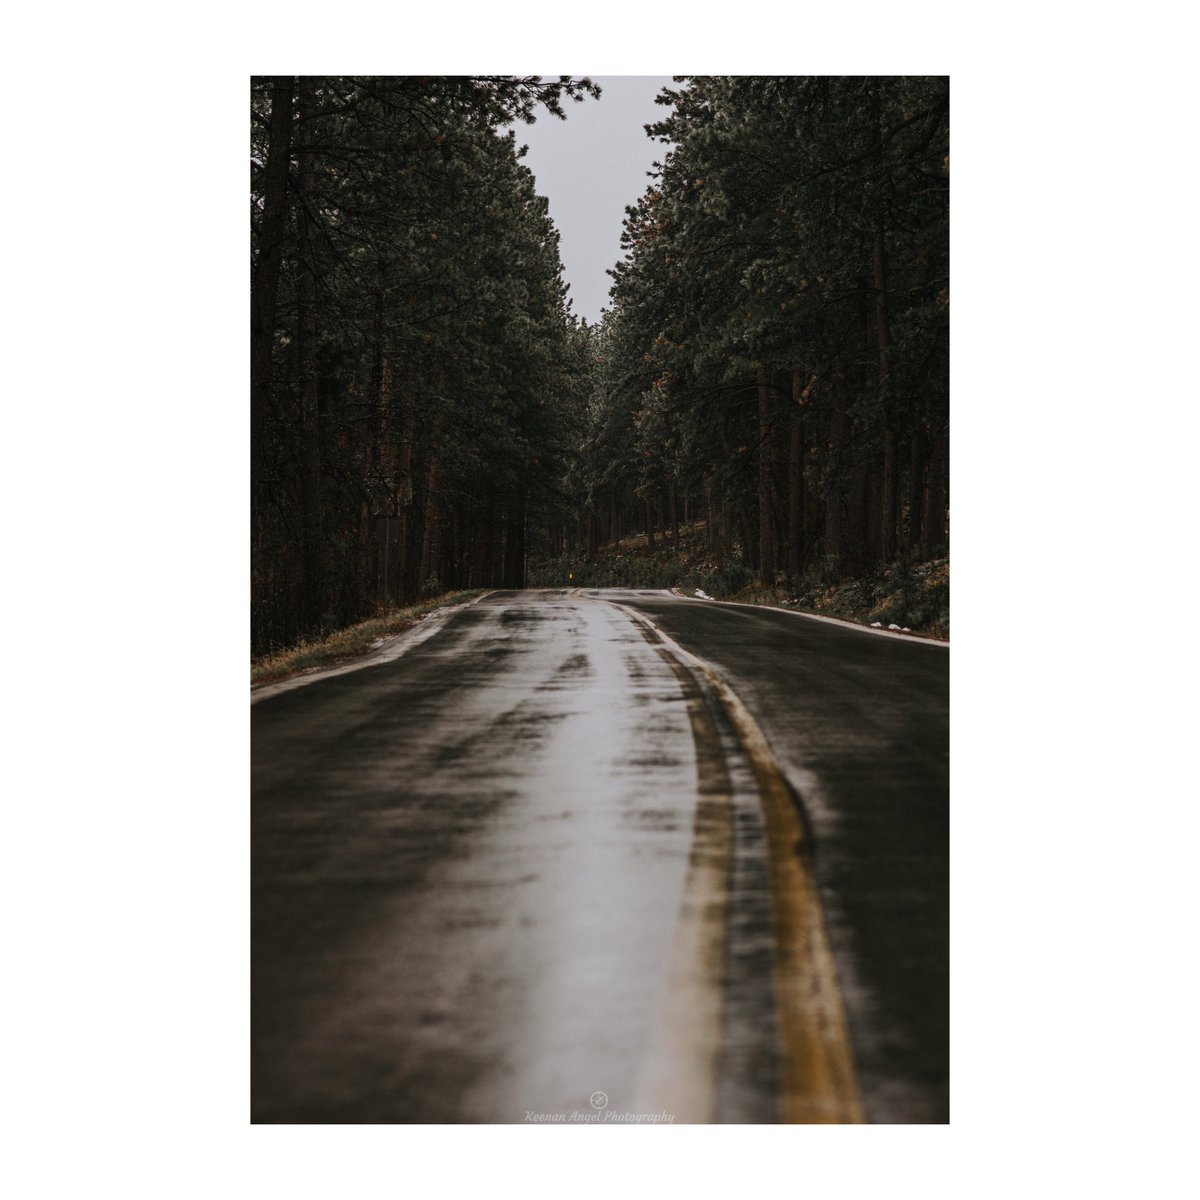 KeenanAngel1: Miles & Miles. nn#RoadToImagine #PhotographyIsArt https://t.co/SUjltEmro0